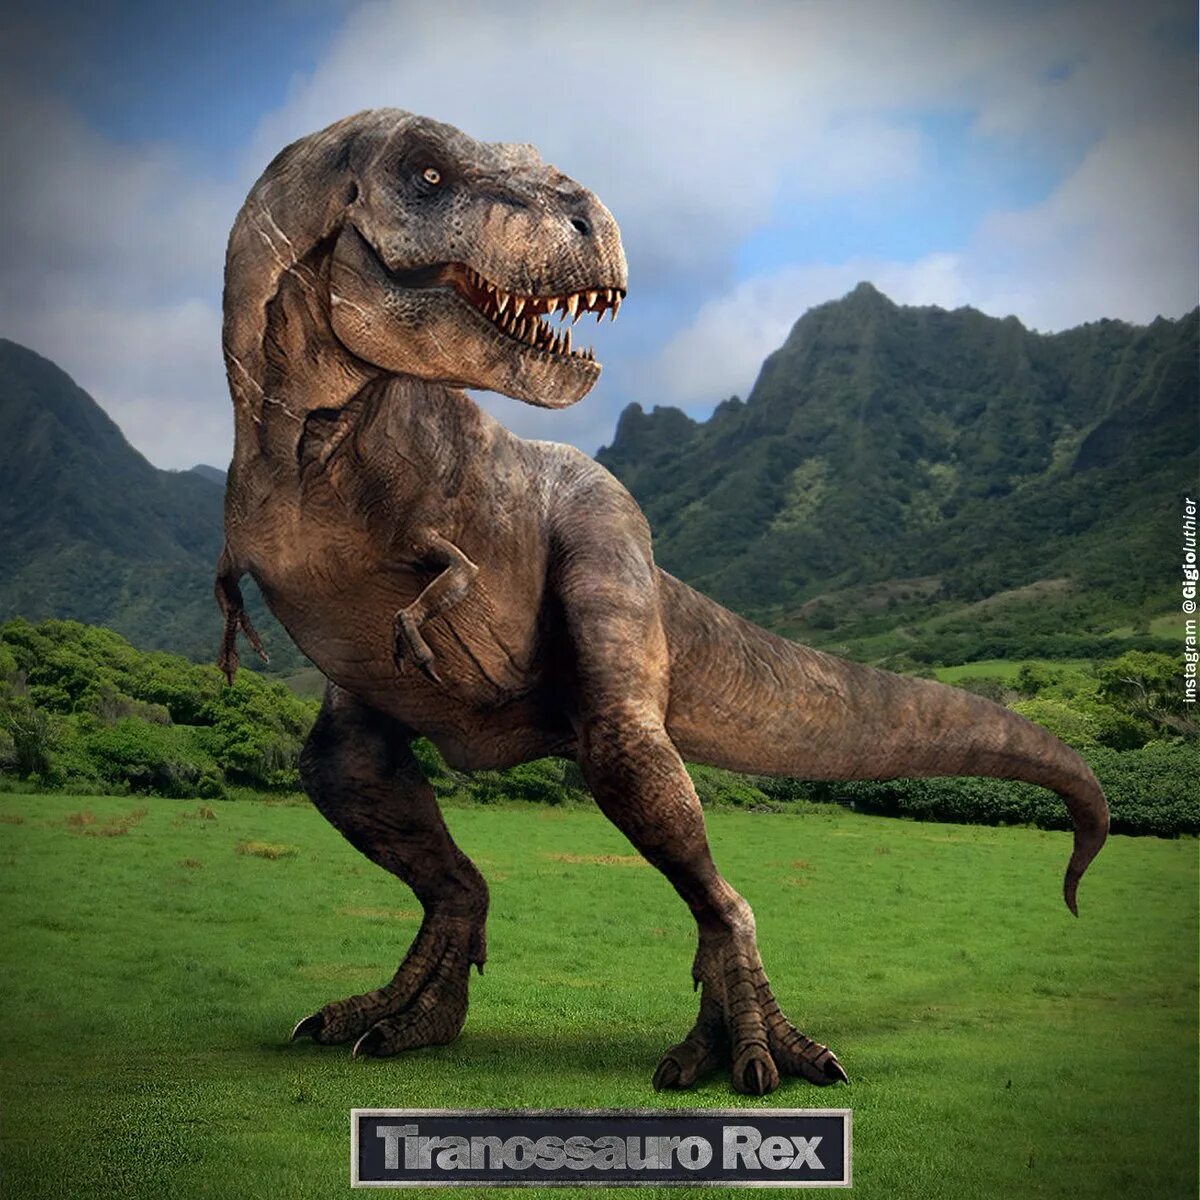 Включи динозавры человек. Тираннозавр мир Юрского периода 2. Тираннозавр рекс парк Юрского периода 3. Мир Юрского периода 2 Тиранозавр. Самый опасный динозавр в мире.